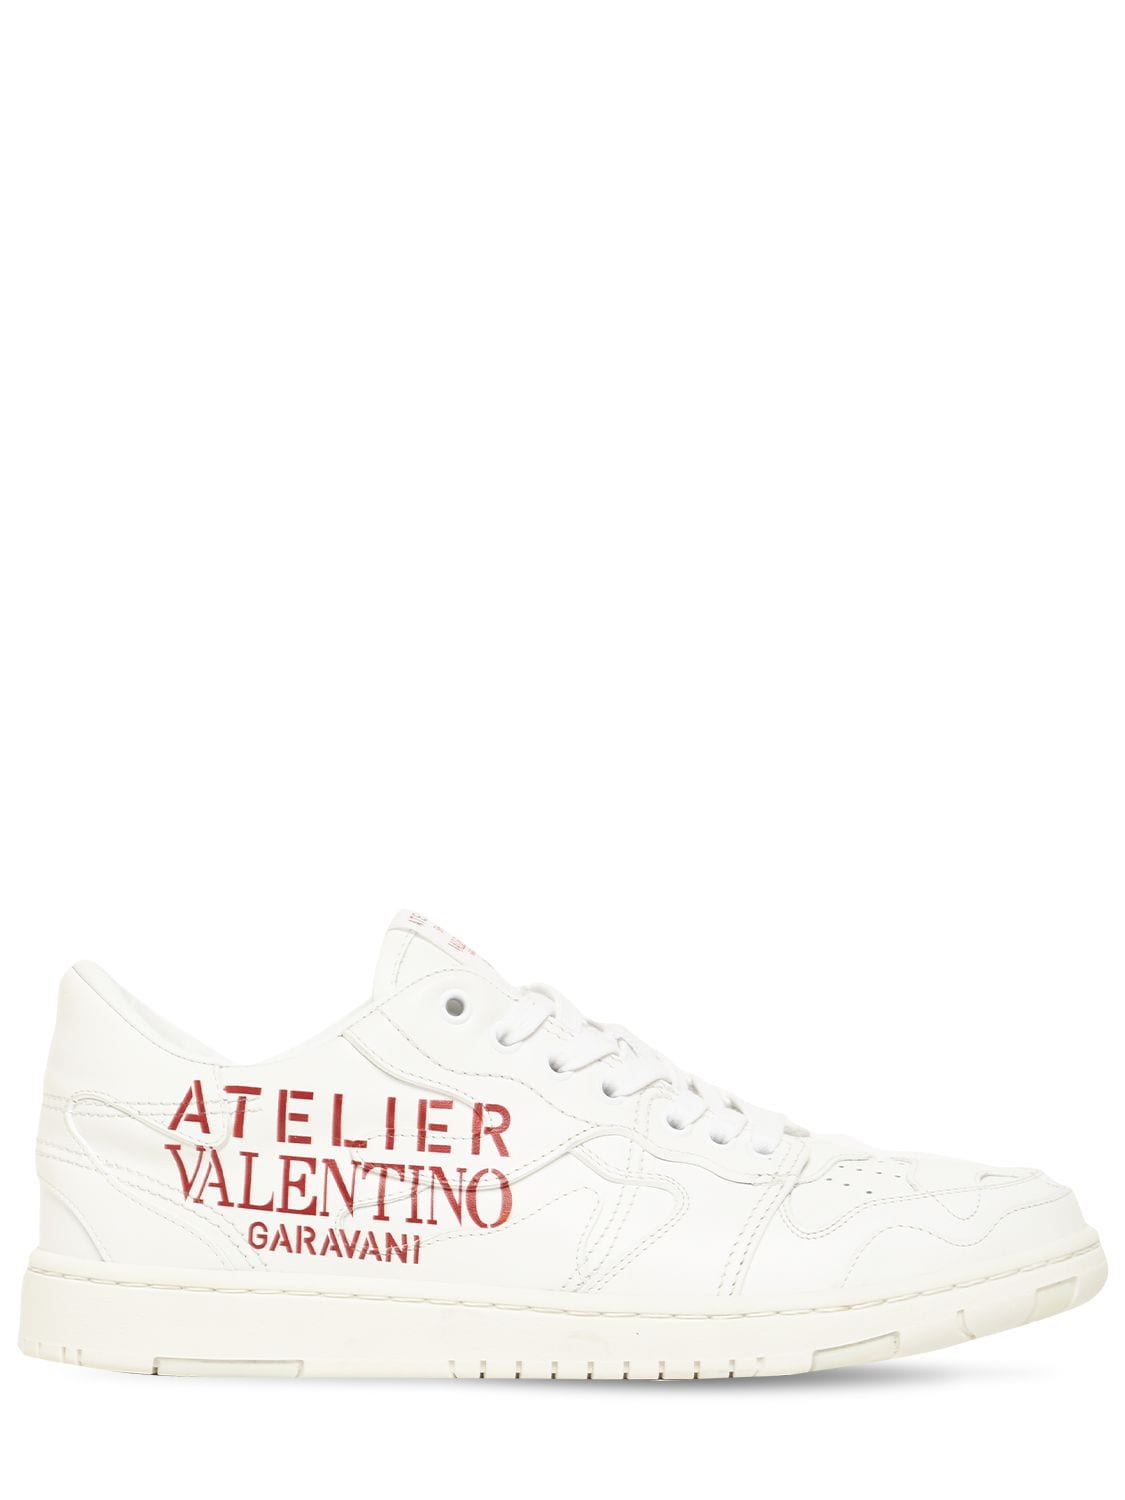 VALENTINO GARAVANI “ATELIER VALENTINO”皮革运动鞋,74IH0Z018-MEJP0